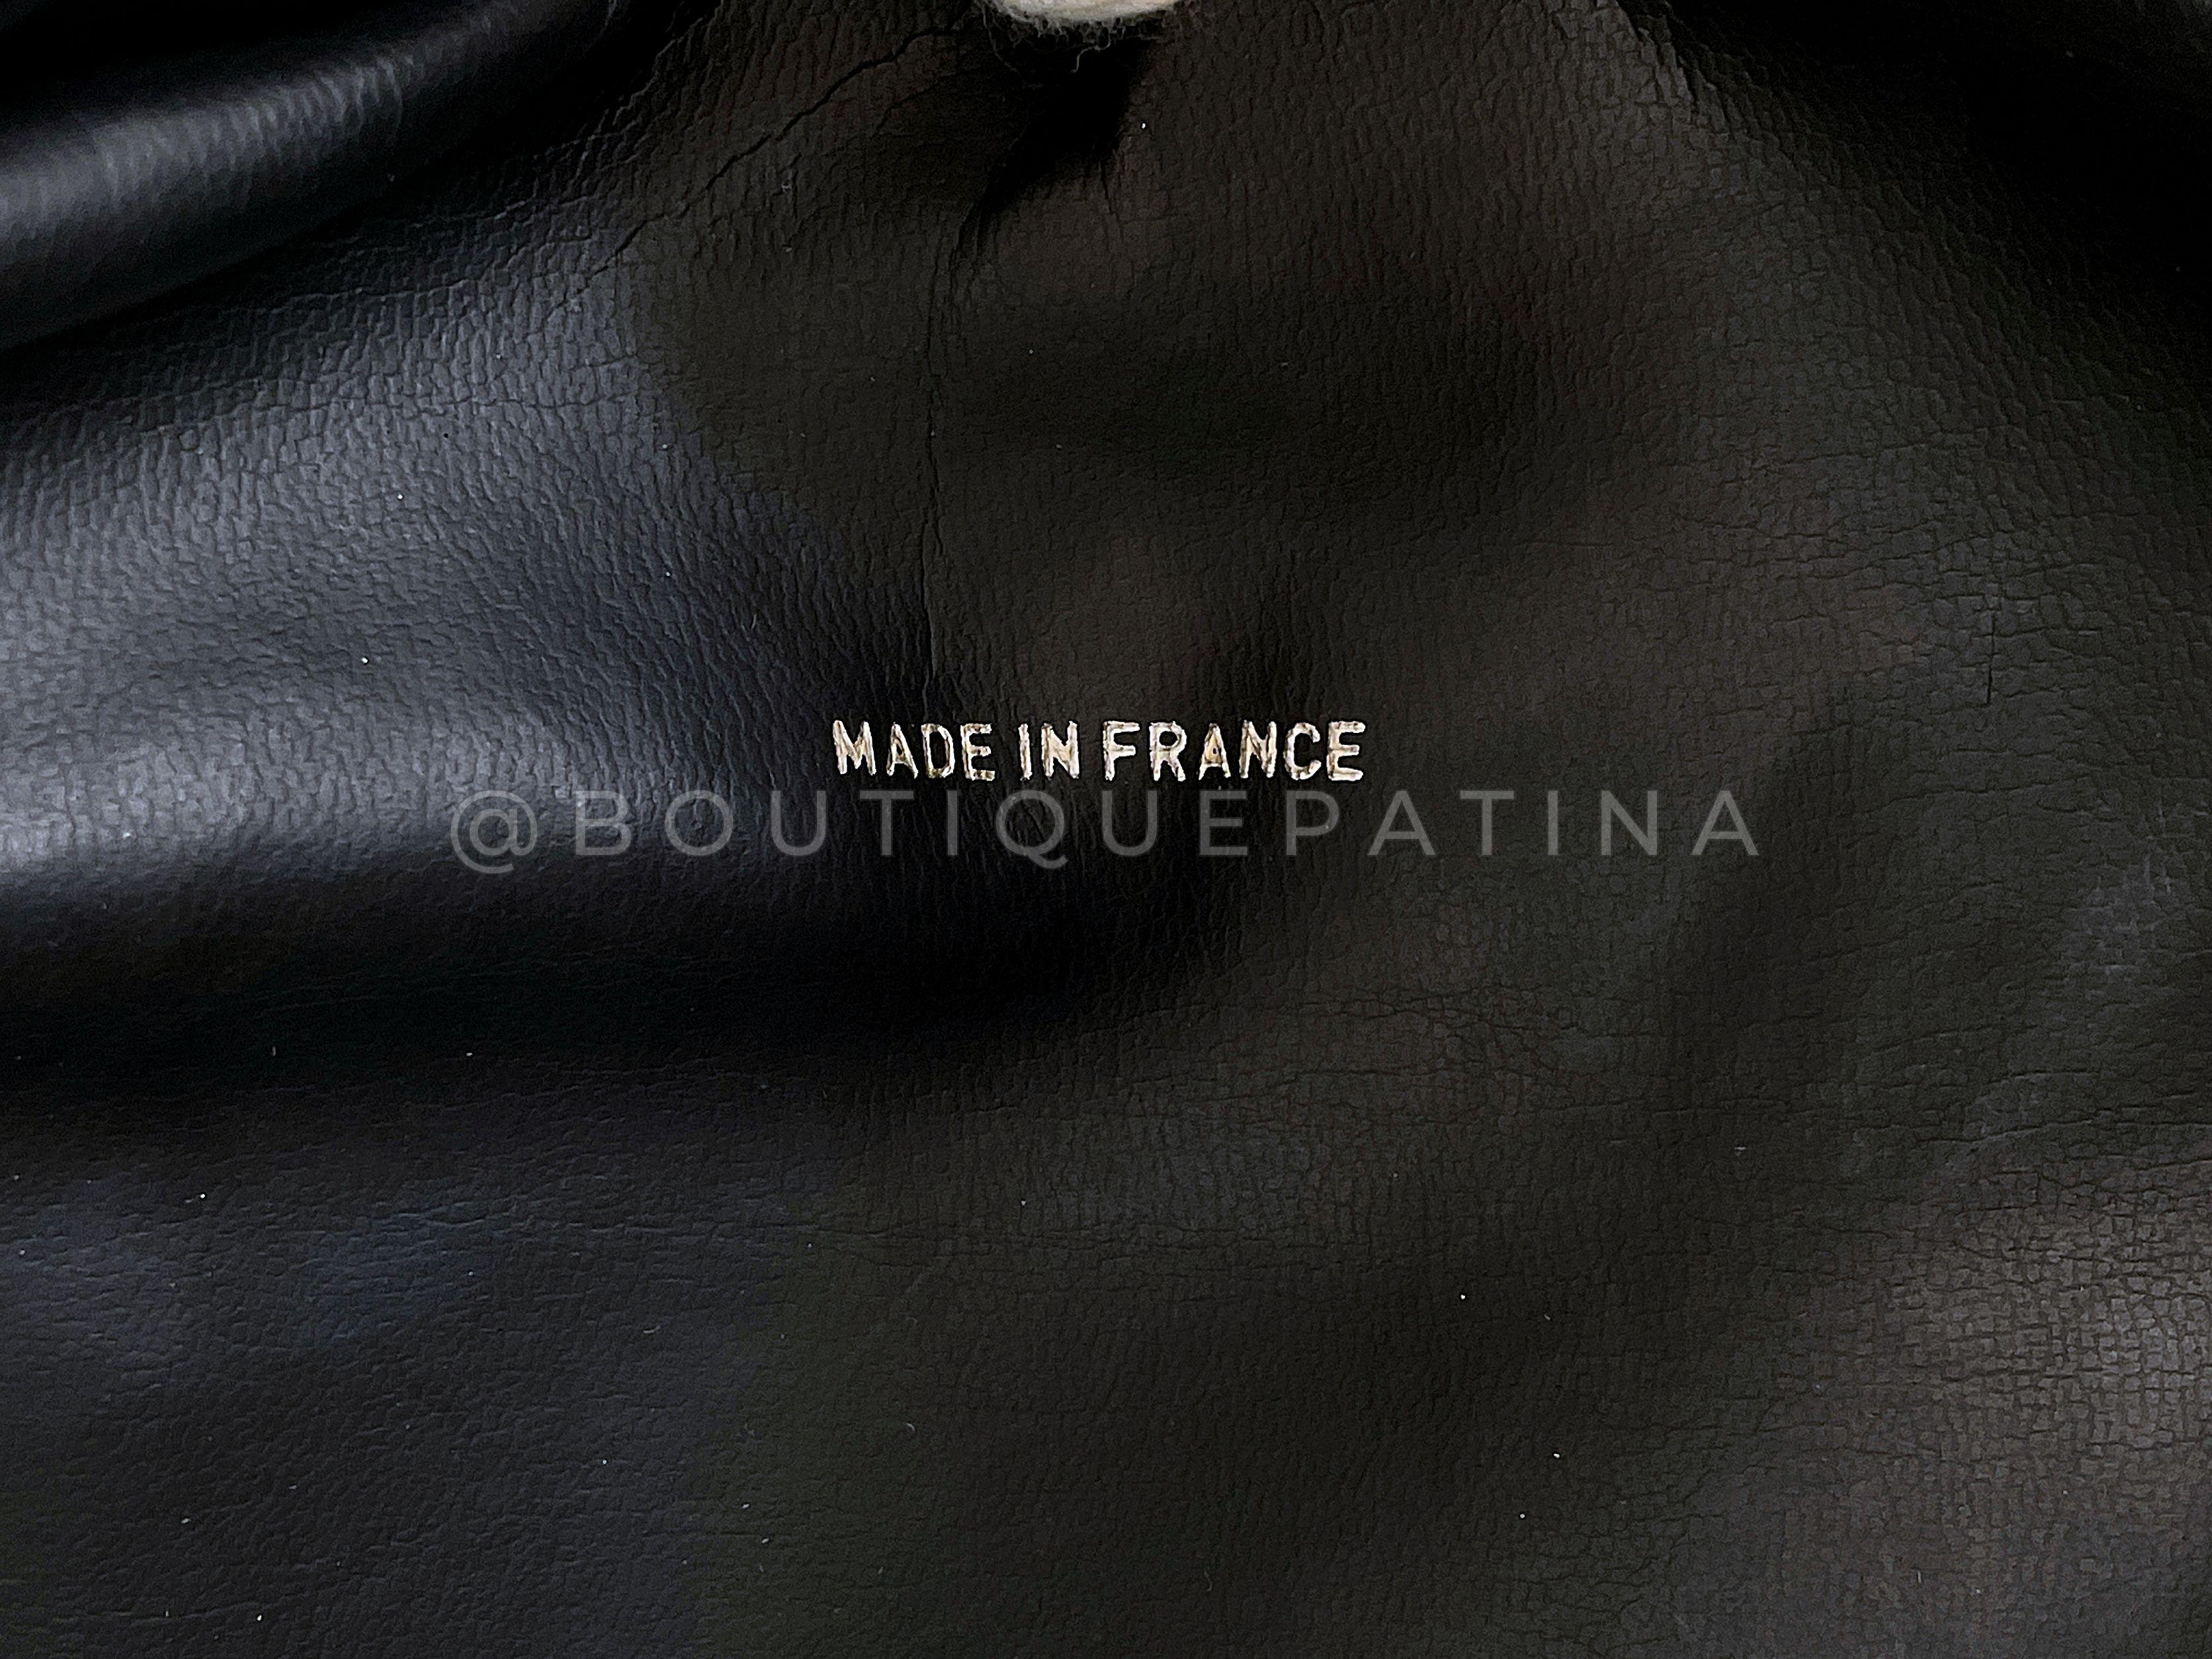 Pristine Chanel 1995 Vintage Black Letter Large Bowler Duffle Bag 67789 For Sale 7